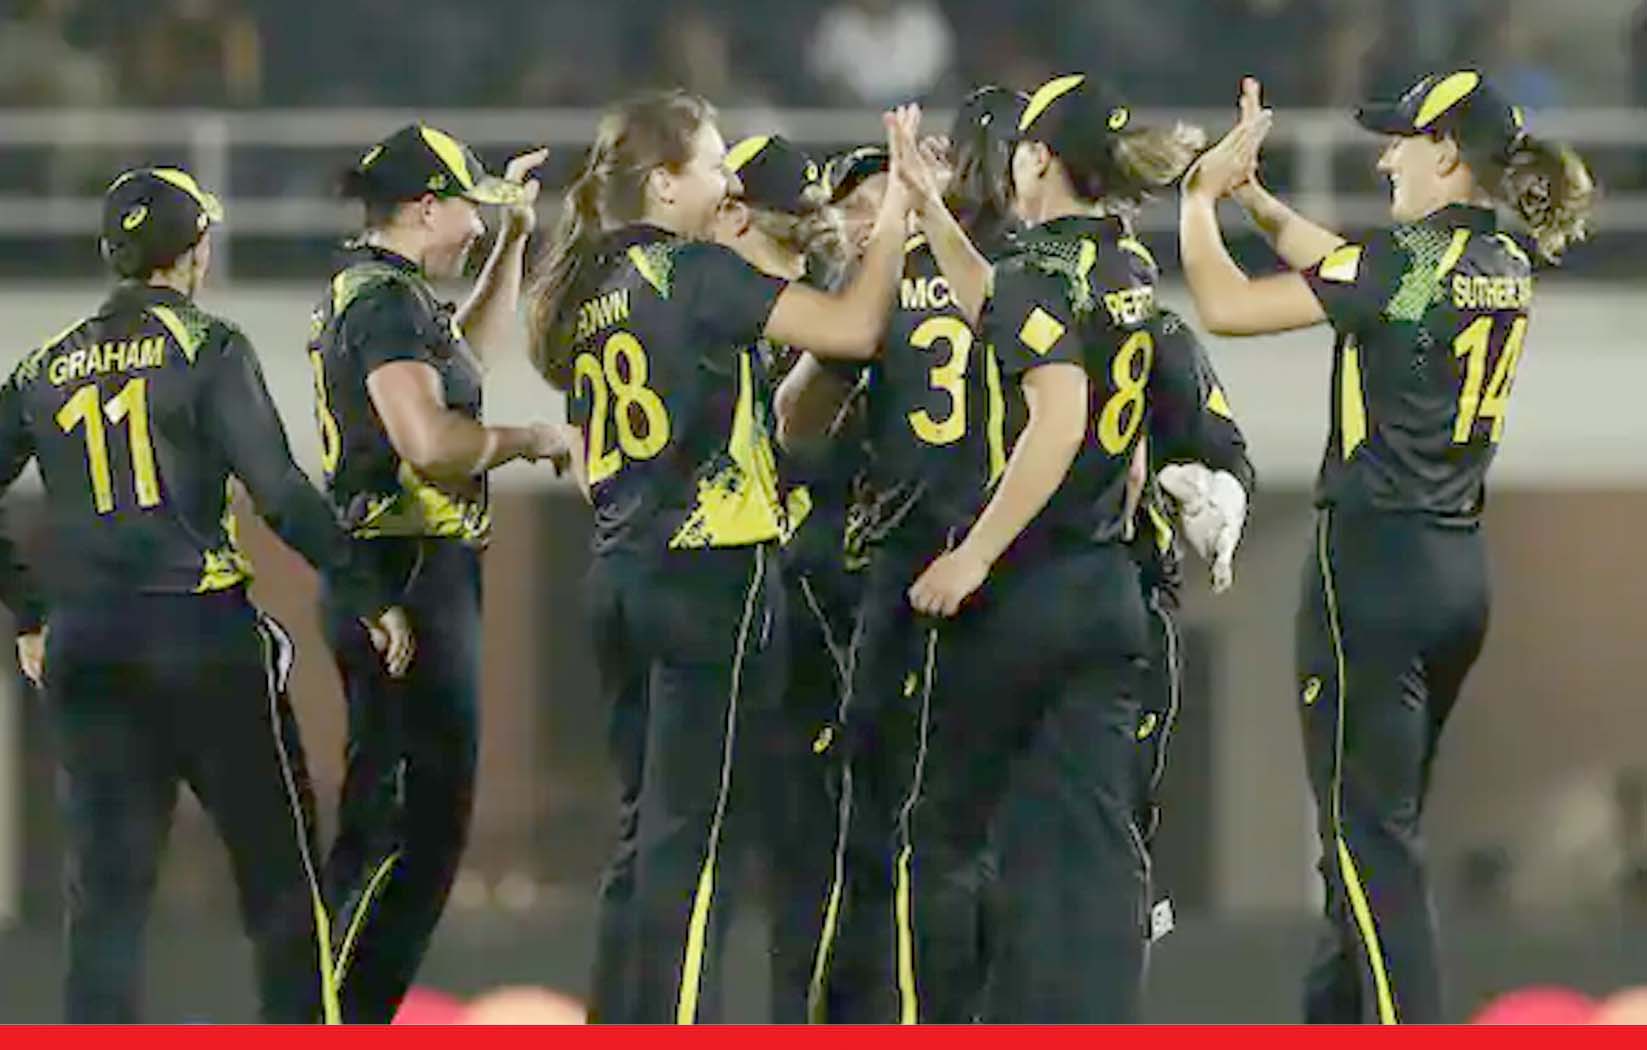 ऑस्ट्रेलिया ने 5वें टी20 मुकाबले में भारत को 54 रन से हराकर किया सीरीज पर 4-1 से कब्जा